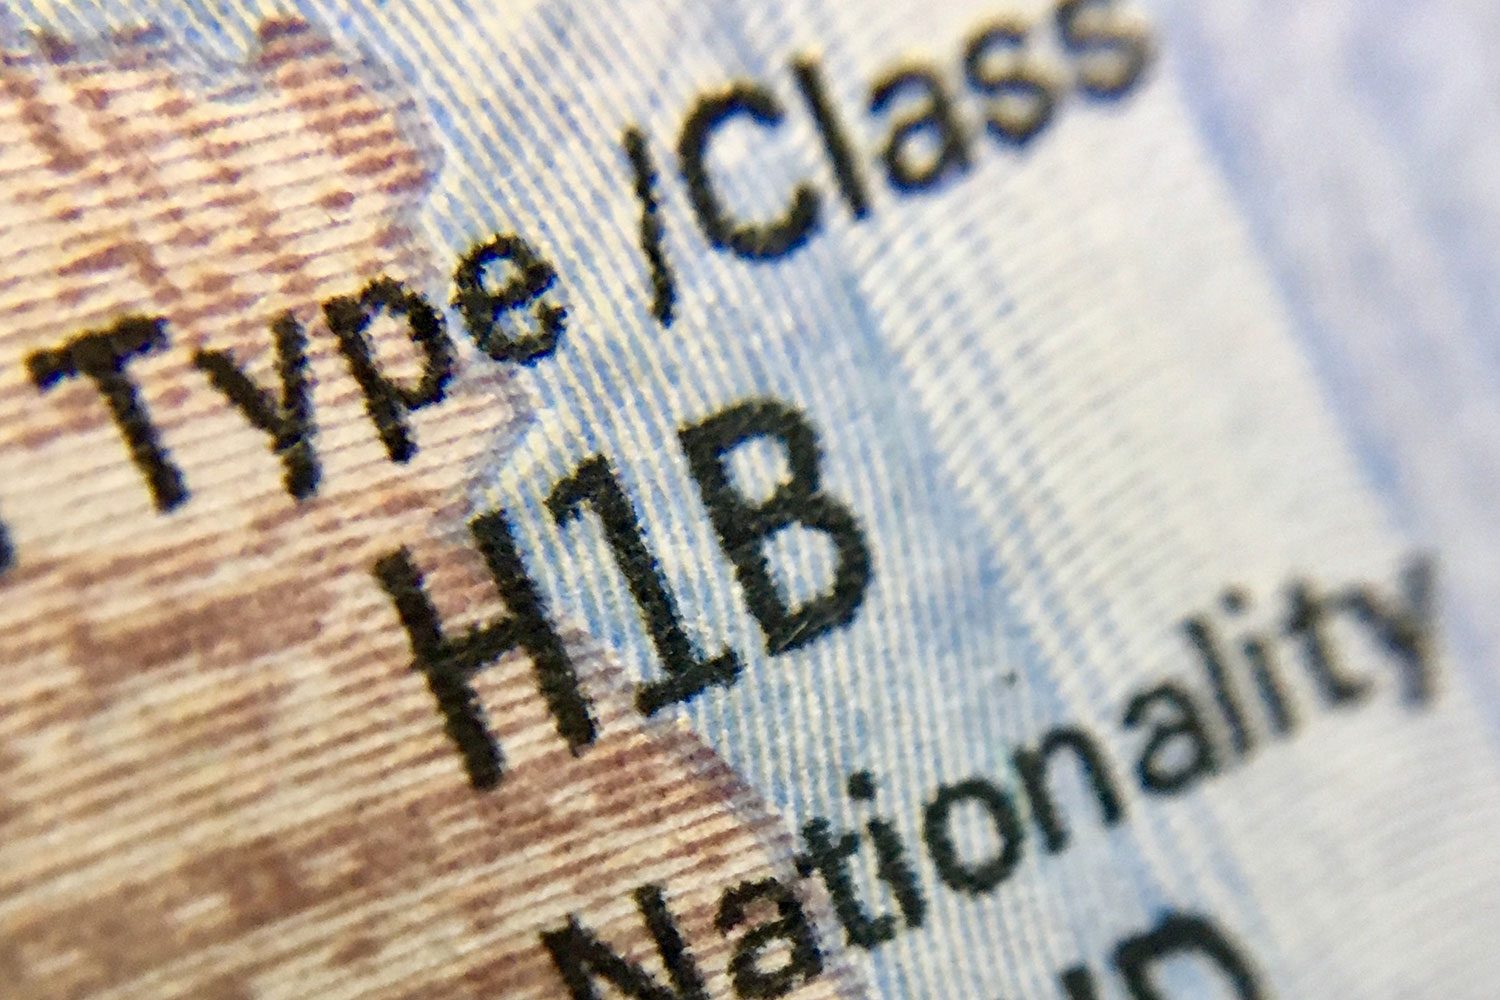 H1-B Visa